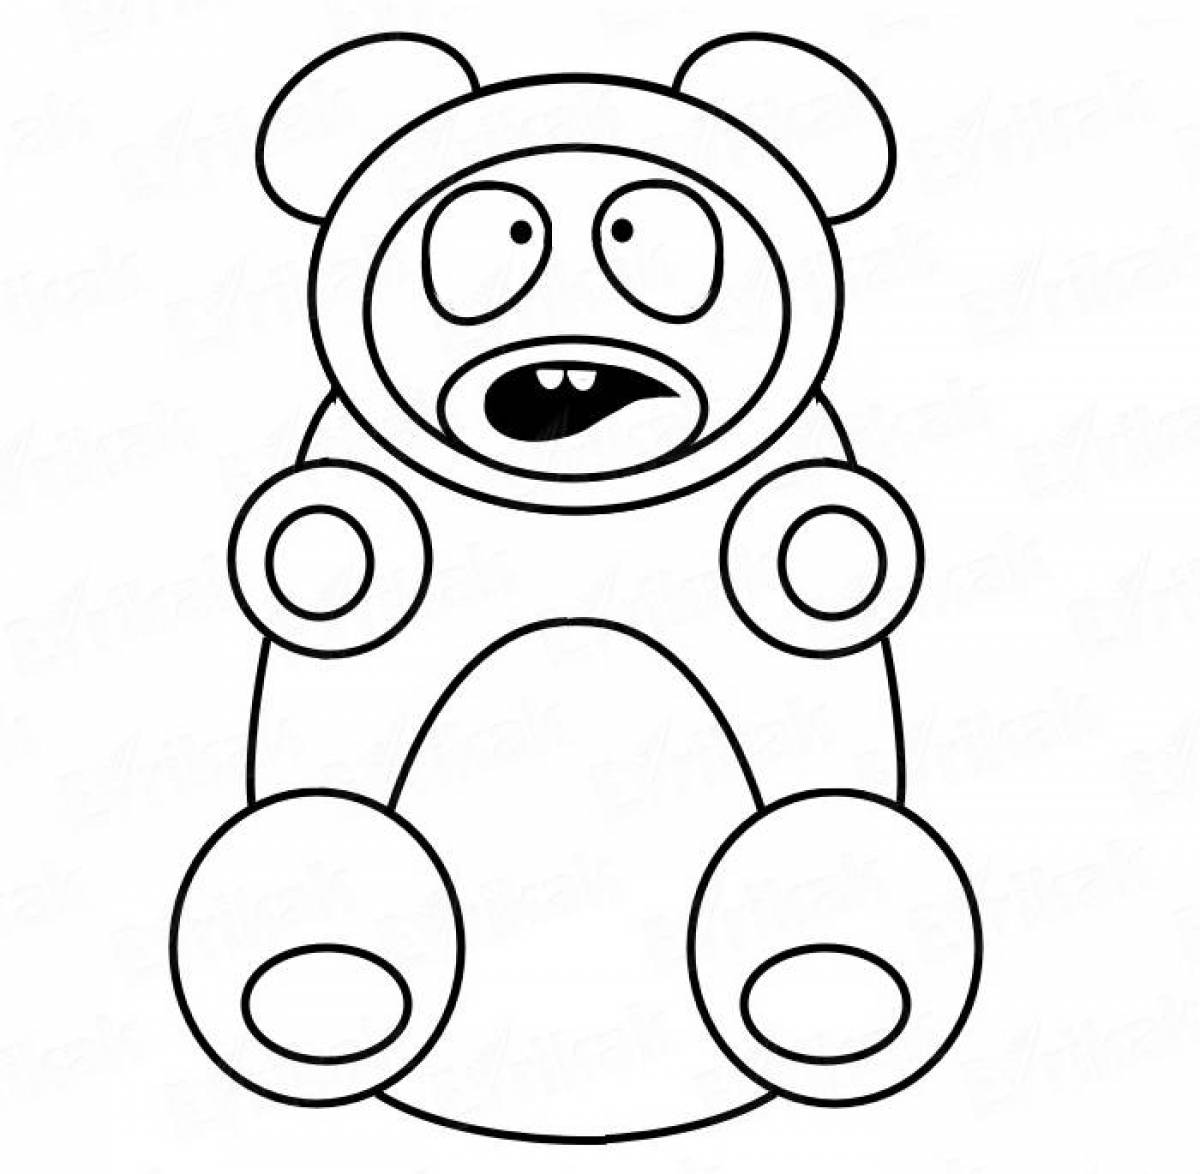 Joyful valera gummy bear coloring book